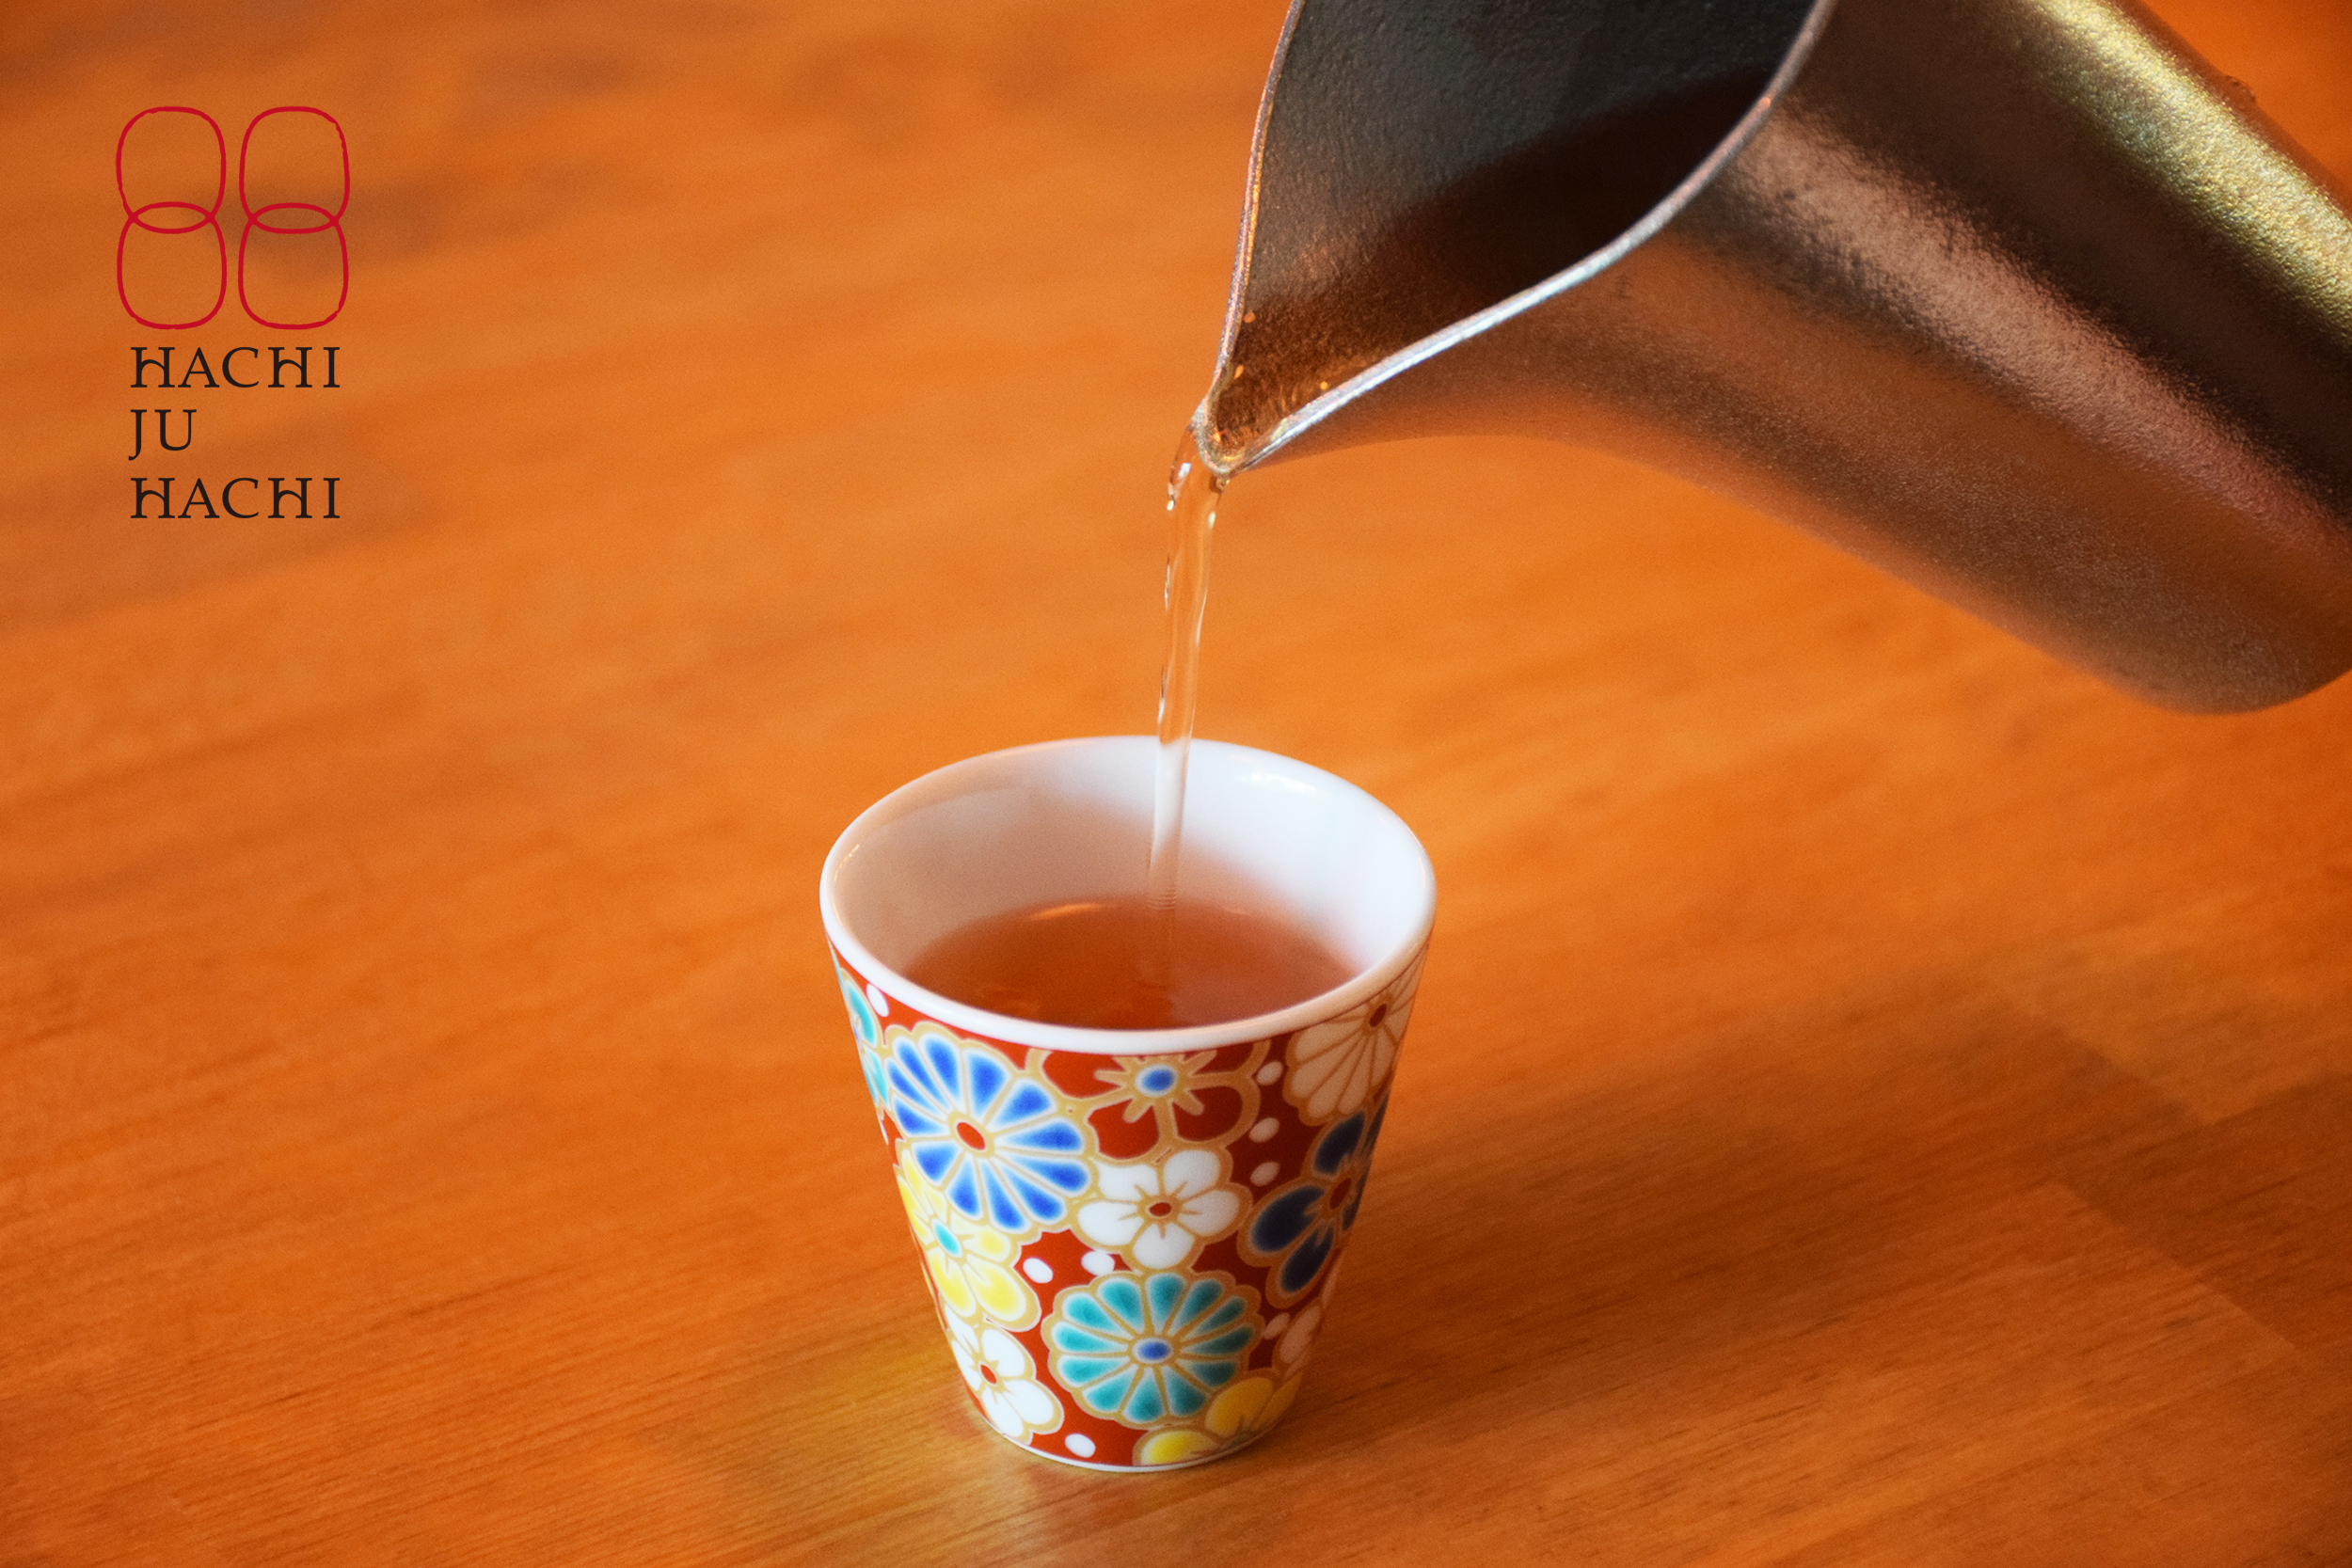 2種の棒ほうじ茶をブレンドした“琥珀色の玄米茶”、
玄米茶専門ブランドから3/15(金)新発売